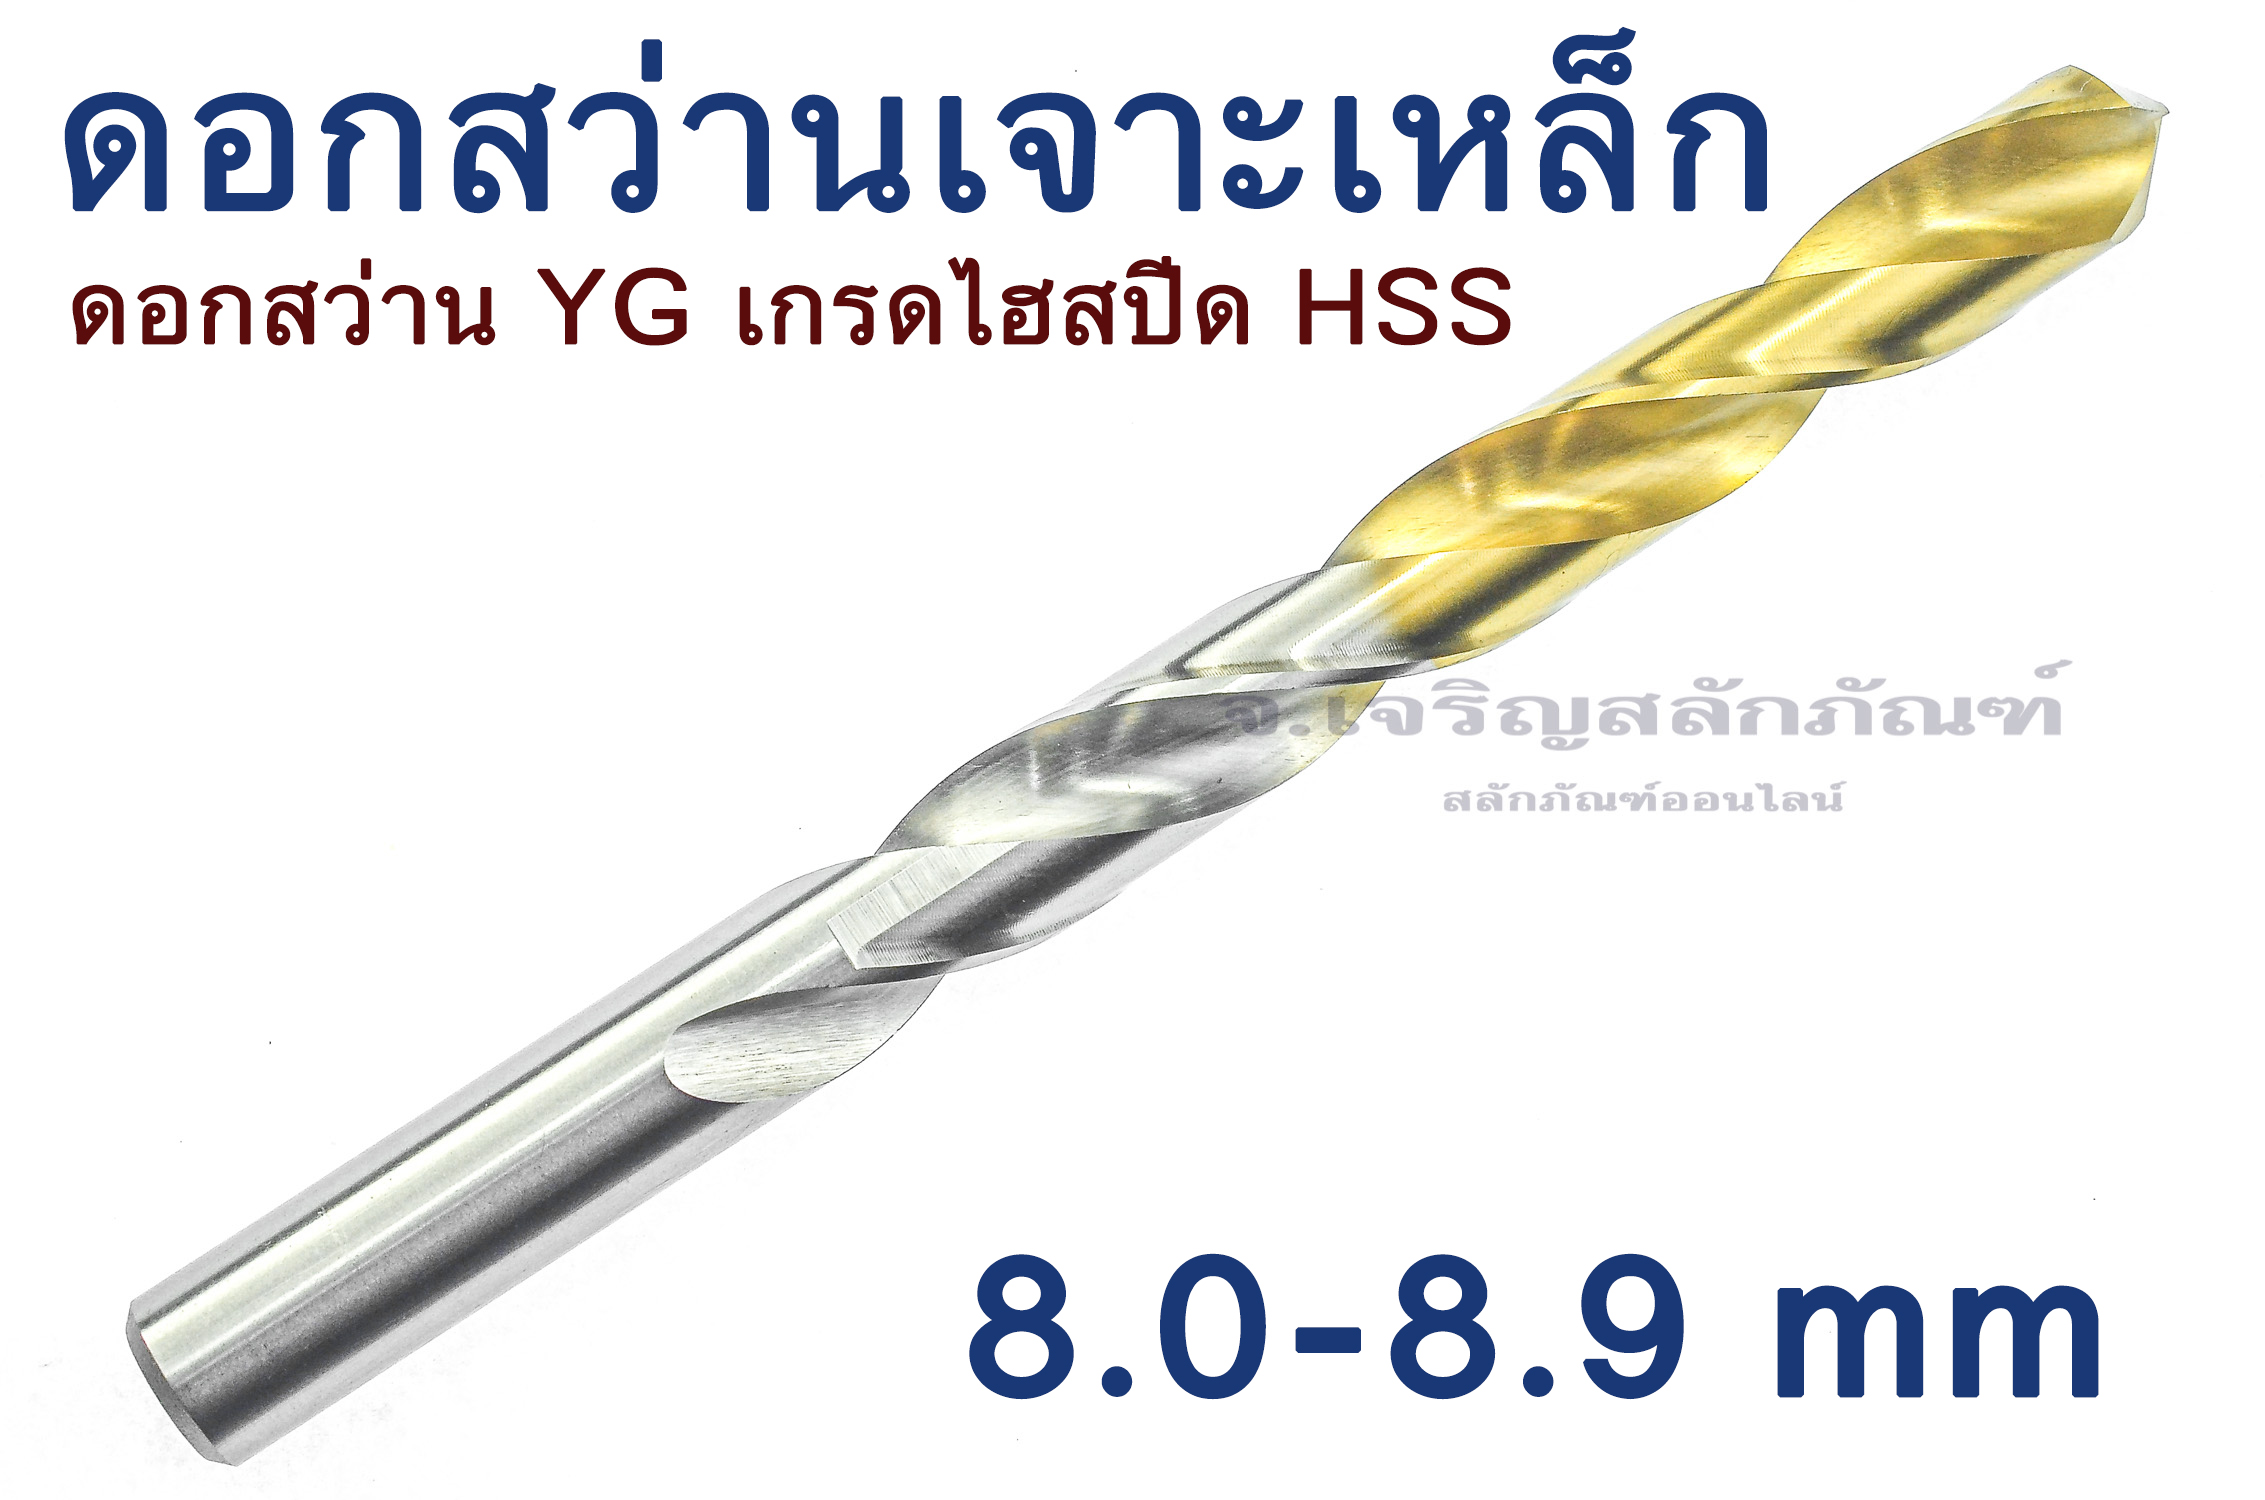 ดอกสว่าน YG ดอกสว่านเจาะเหล็ก 8.0 8.1 8.2 8.3 8.4 8.5 8.6 8.7 8.8 8.9 mm เจาะเหล็ก เกรดไฮสปีด HSS